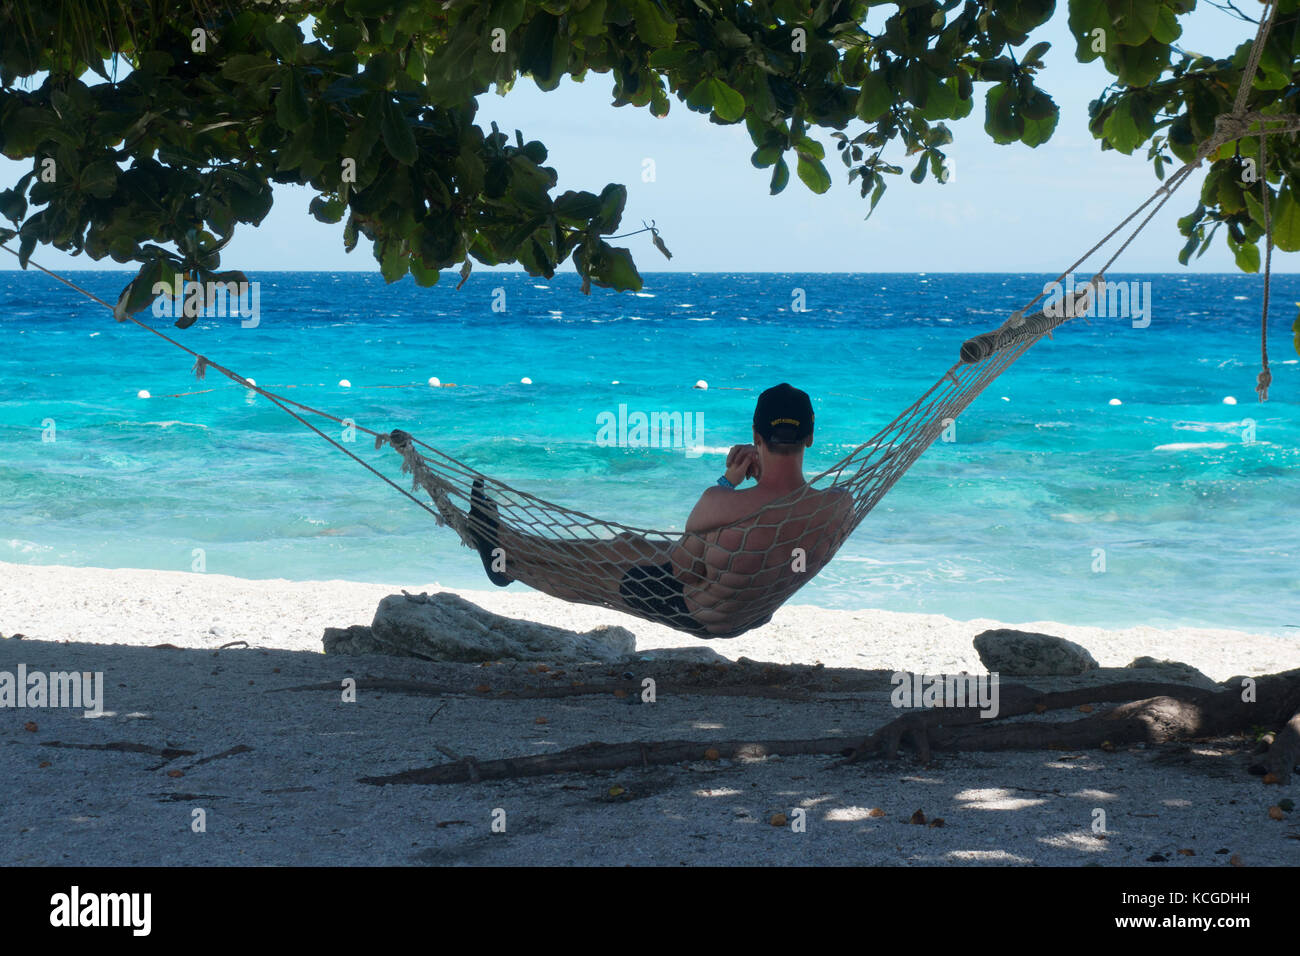 Filippine spiaggia, Cebu isola - un turista rilassante in un amaca in vacanza, Cebu, Filippine, Asia Foto Stock